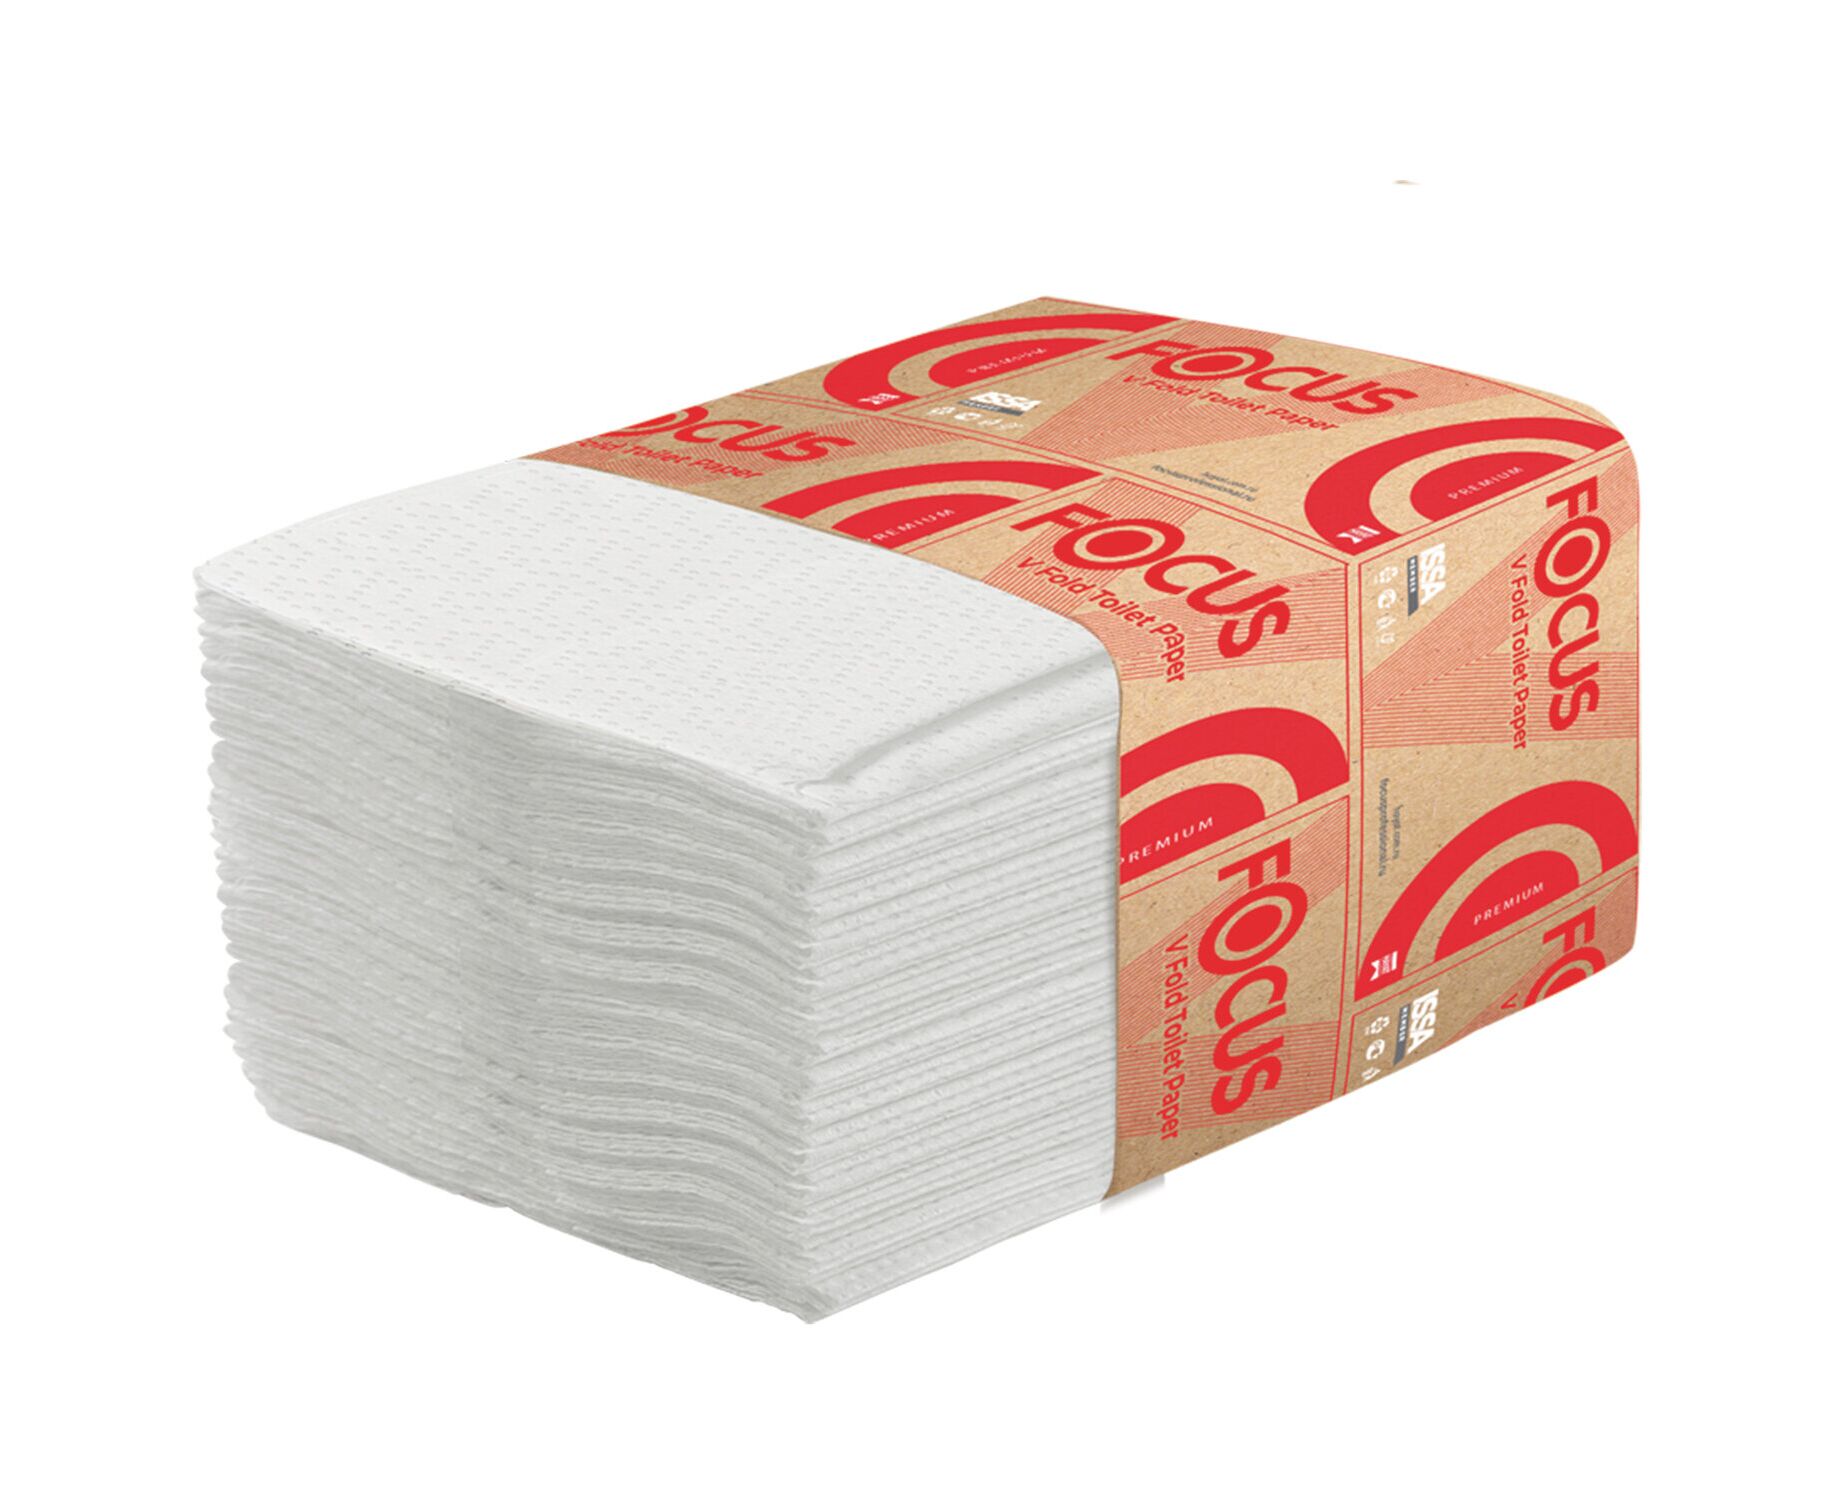 Бумажные полотенца 1 2 листа. Полотенца бумажные фокус v-сложения 1-сл 250 л 23 23. Туалетная бумага листовая v-сложения (250л) 2сл белая. Туалетная бумага Focus 5049979. Focus hayt бумага туалетная.